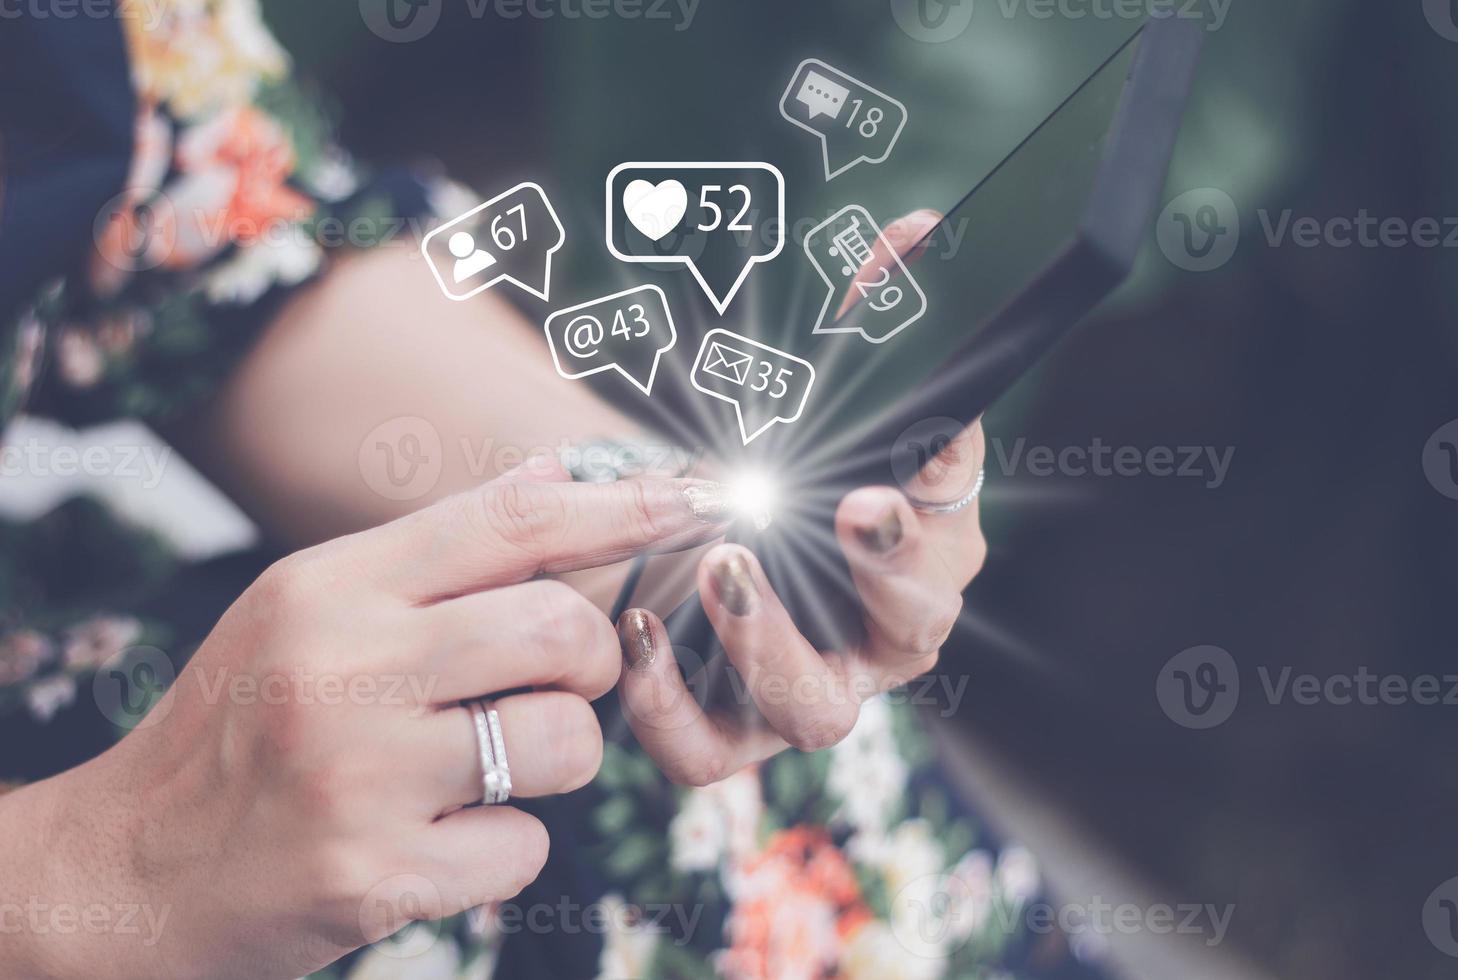 socialt medieteknologikoncept, man hand som använder smartphone-inloggning till onlinenätverket använder sociala medier för att göra affärer och marknadsföra betalning hemifrån via internet. foto